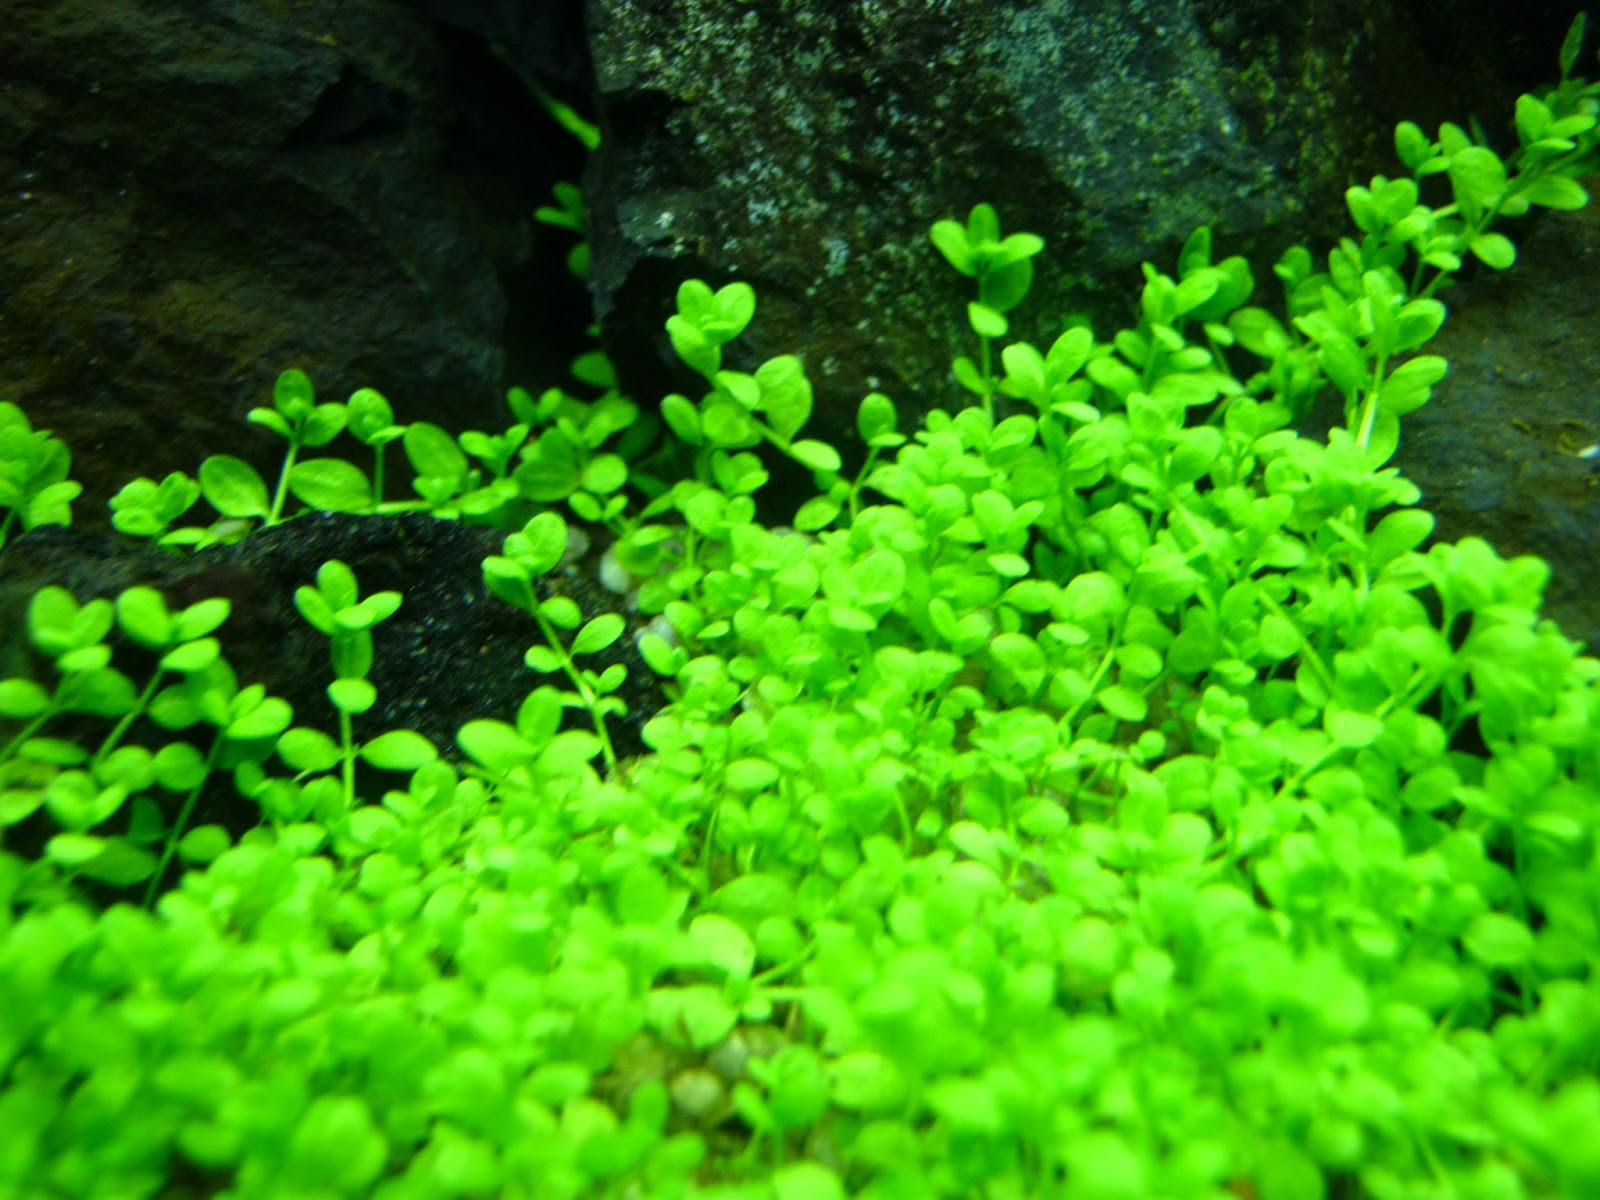 callitrichoides hemianthus cuba tanaman aquascape aquatic terkecil caresheet hias vivarium paludarium